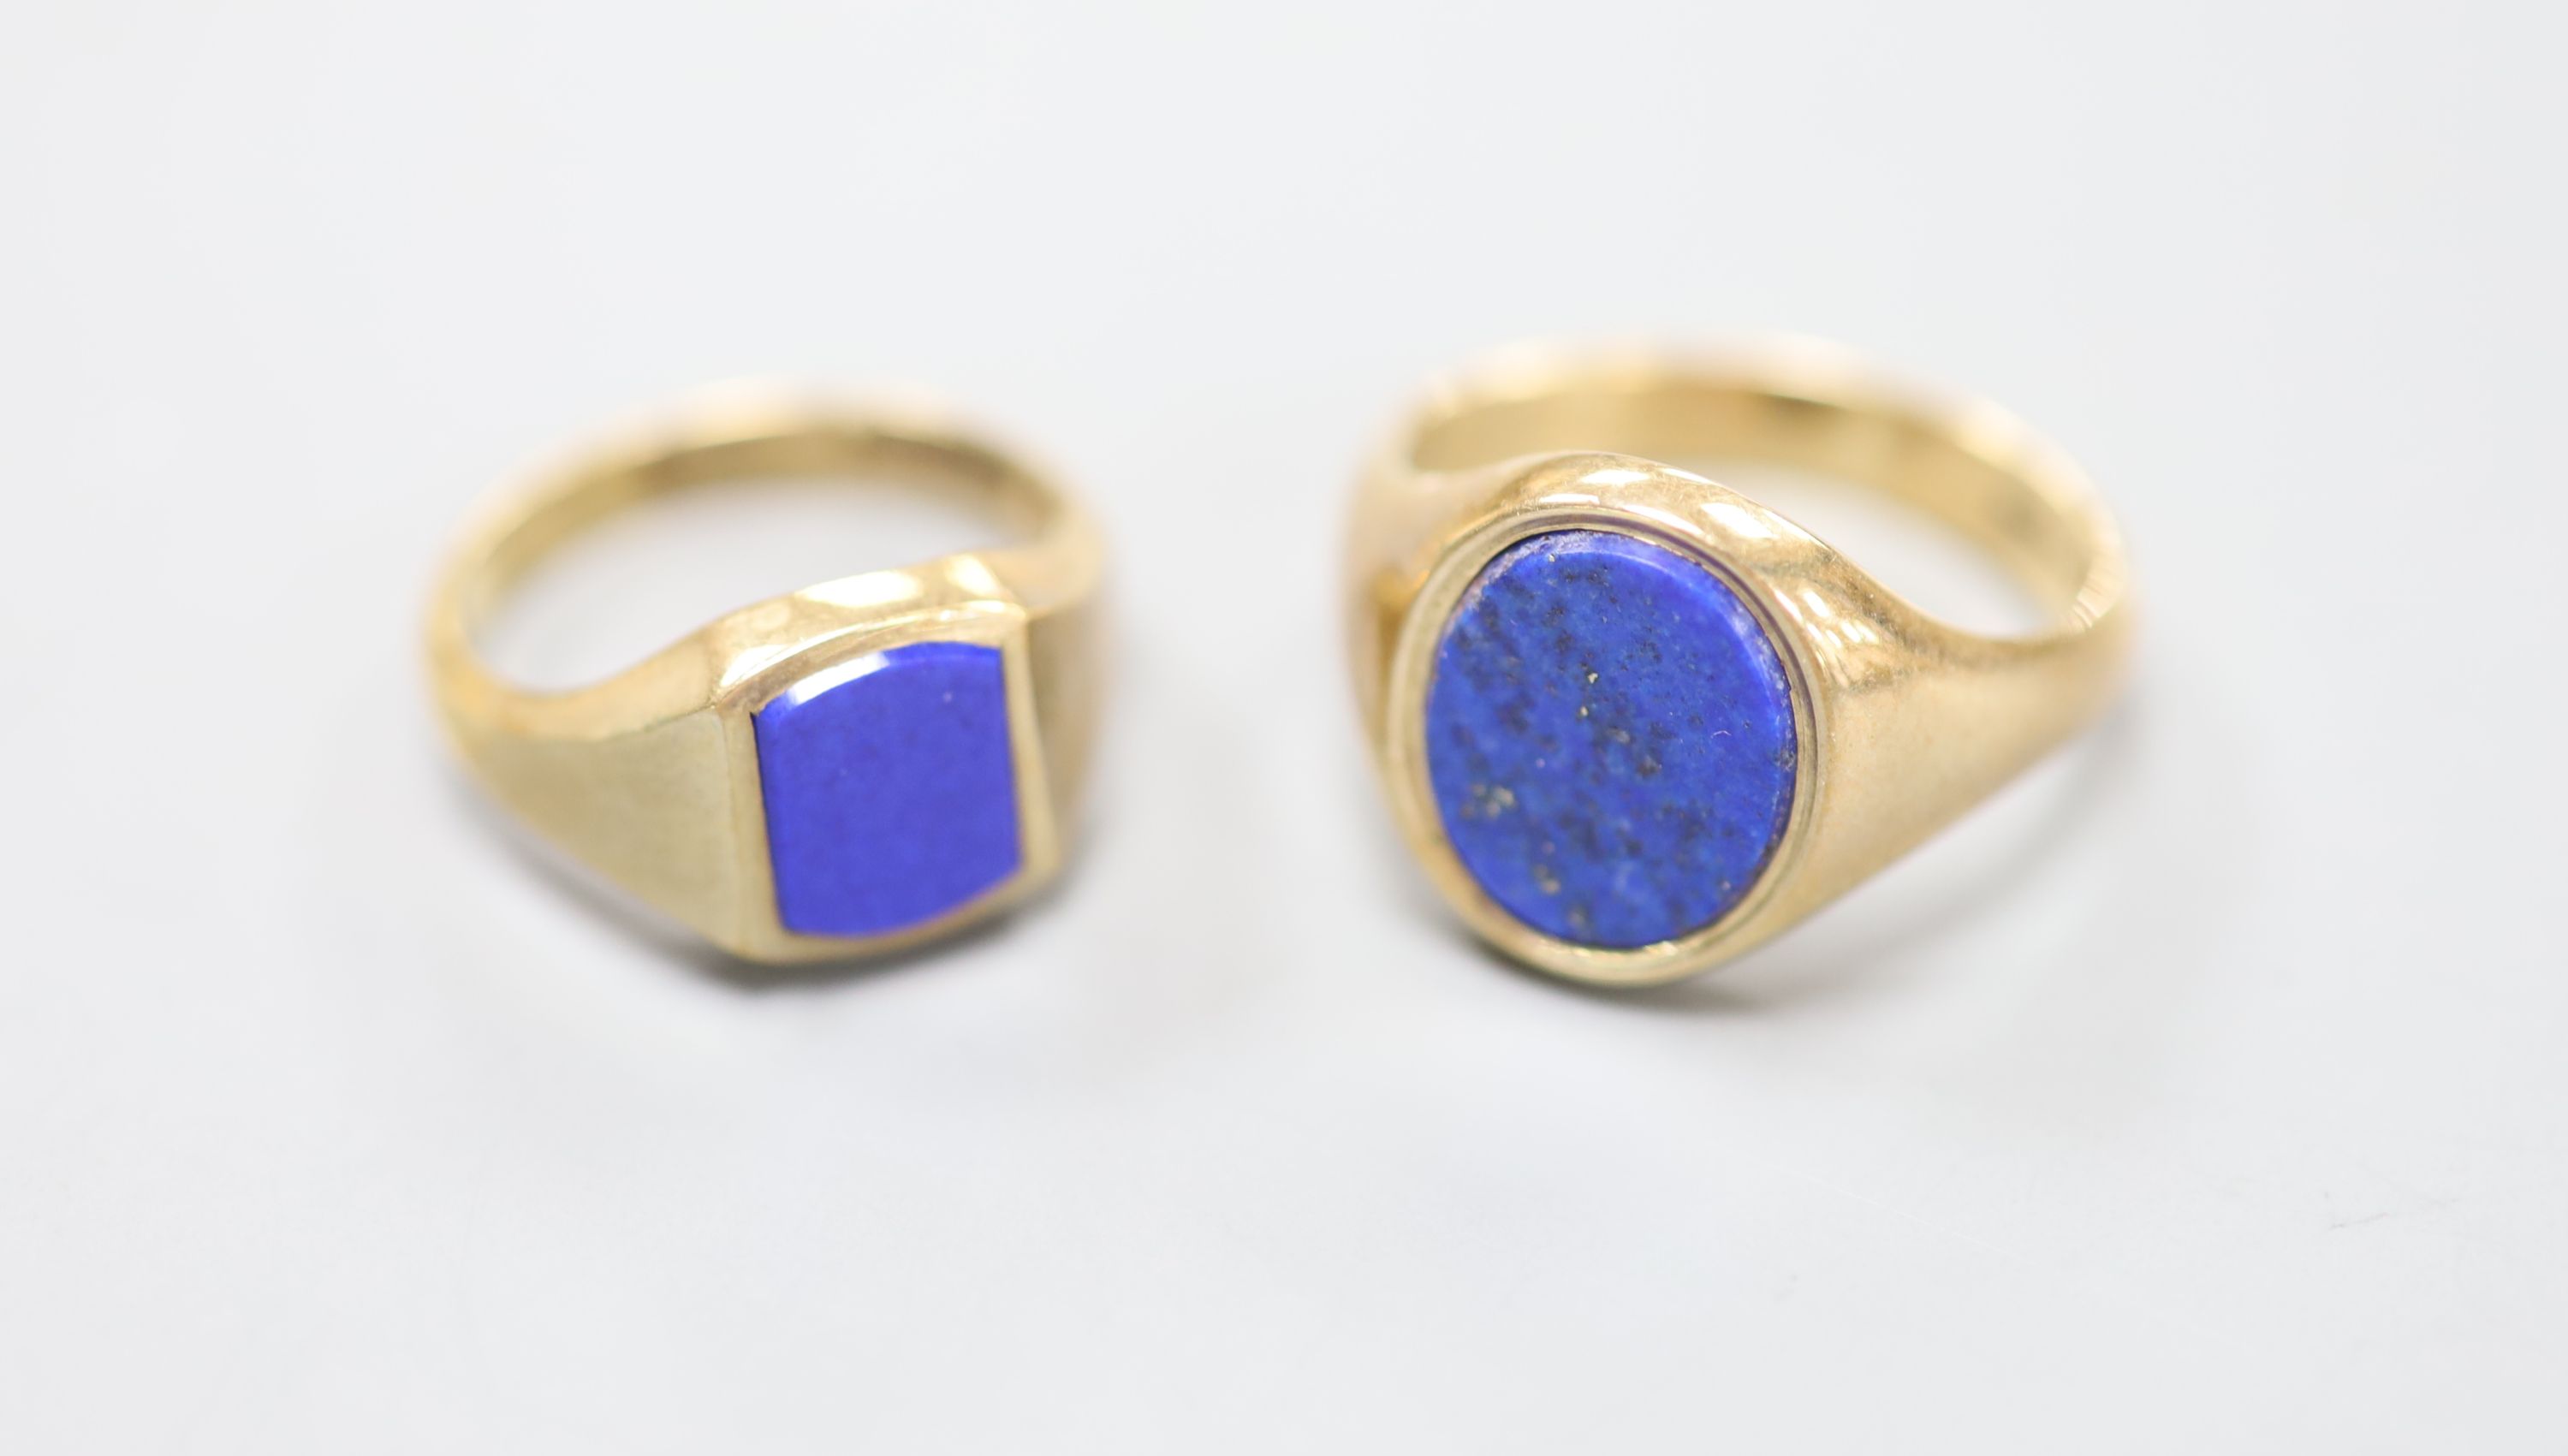 Two modern 9ct gold and lapis lazuli set signet rings, sizes J/K & O/P